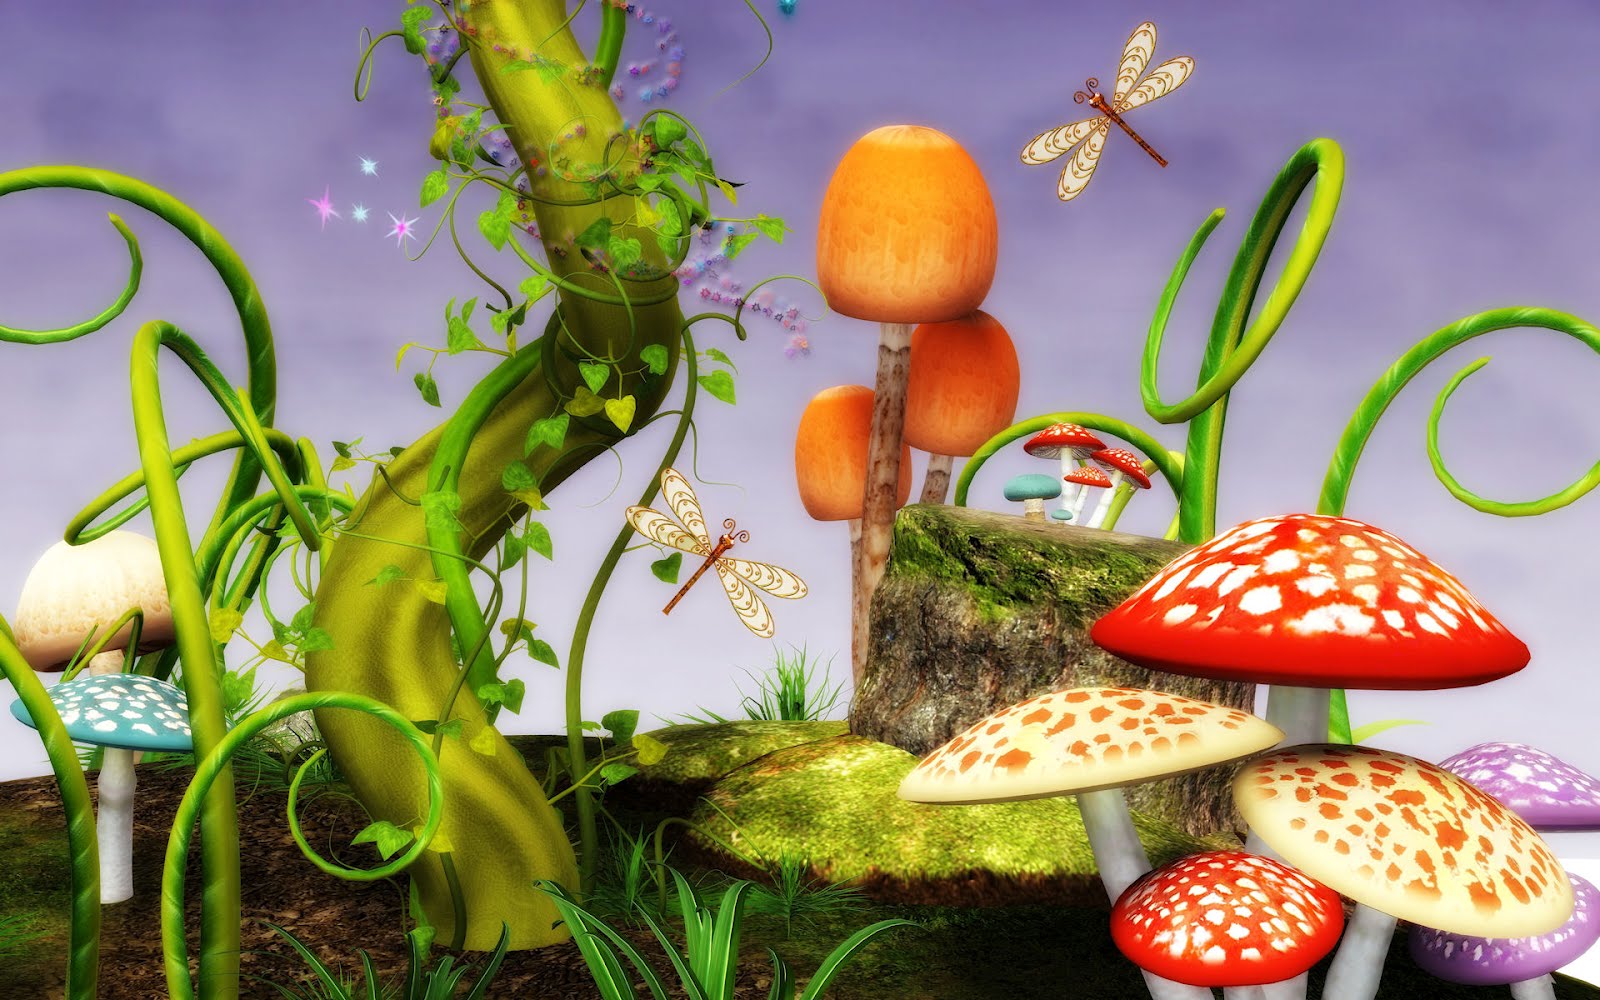 wallpaper de niñas,mushroom,organism,still life,grass,plant